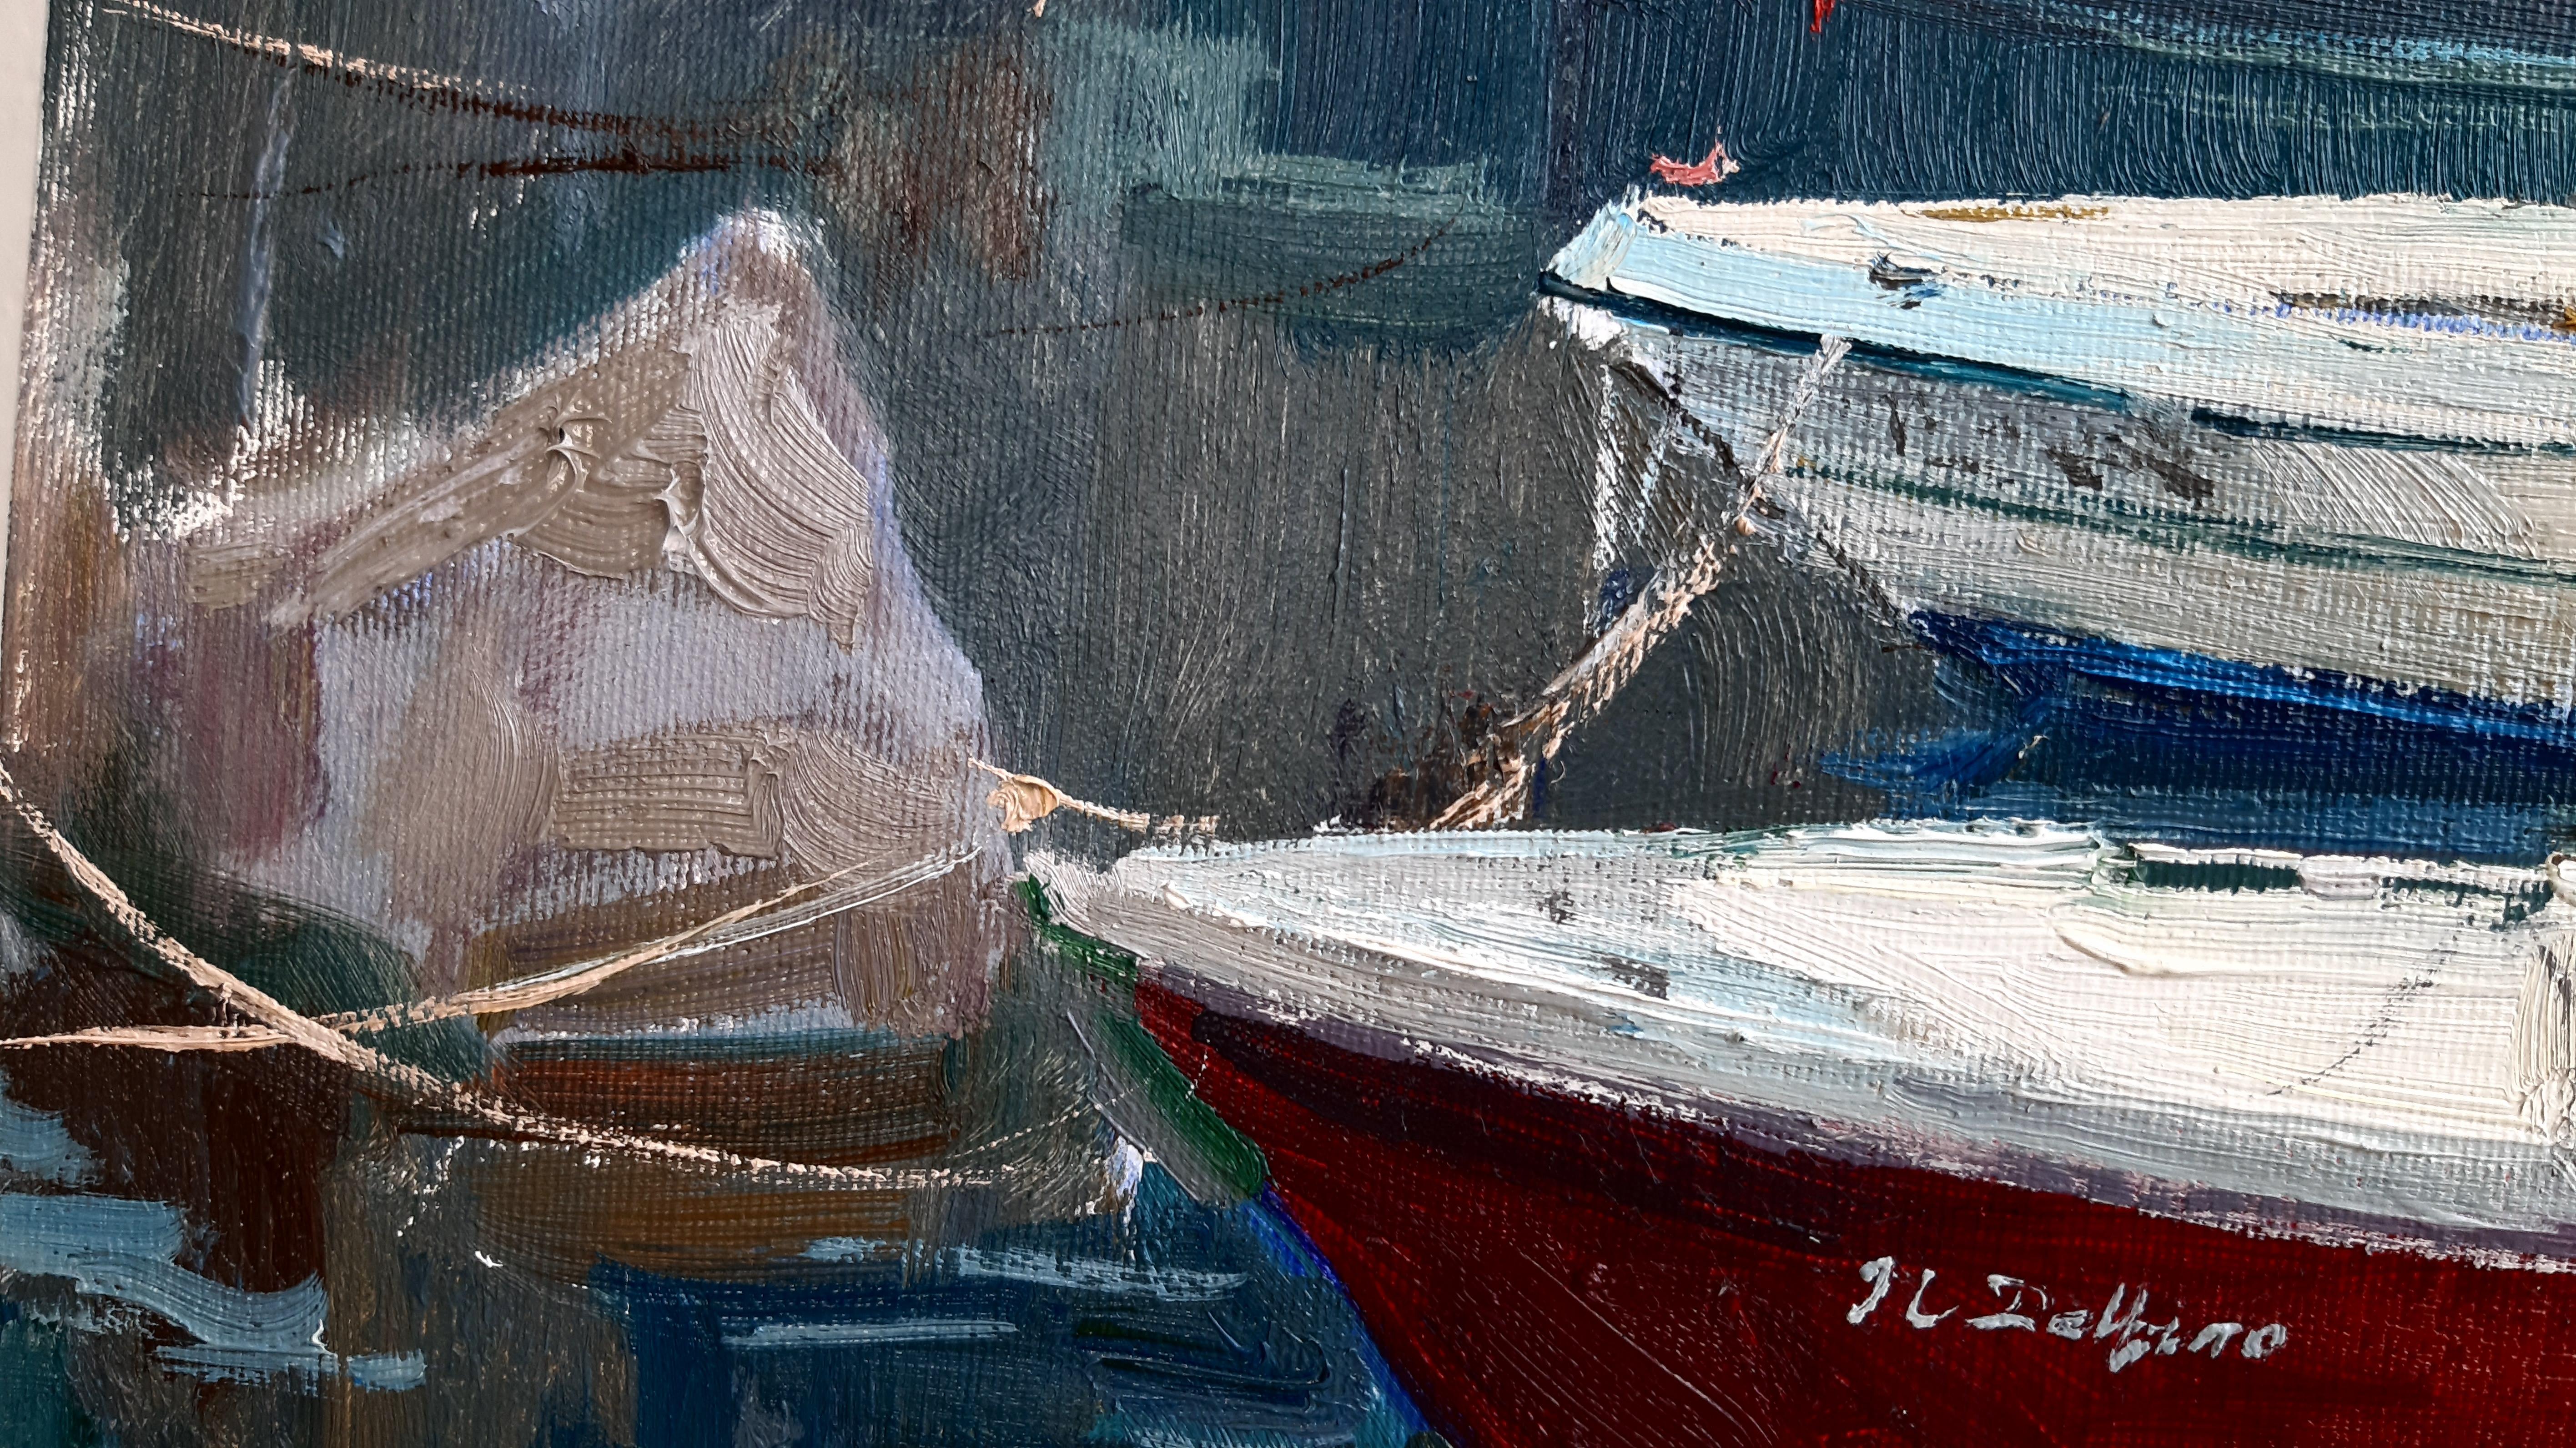 Wharf – maritime Landschaft, Gemälde in Farben Blau, Grün, Weiß, Braun und Grau 2